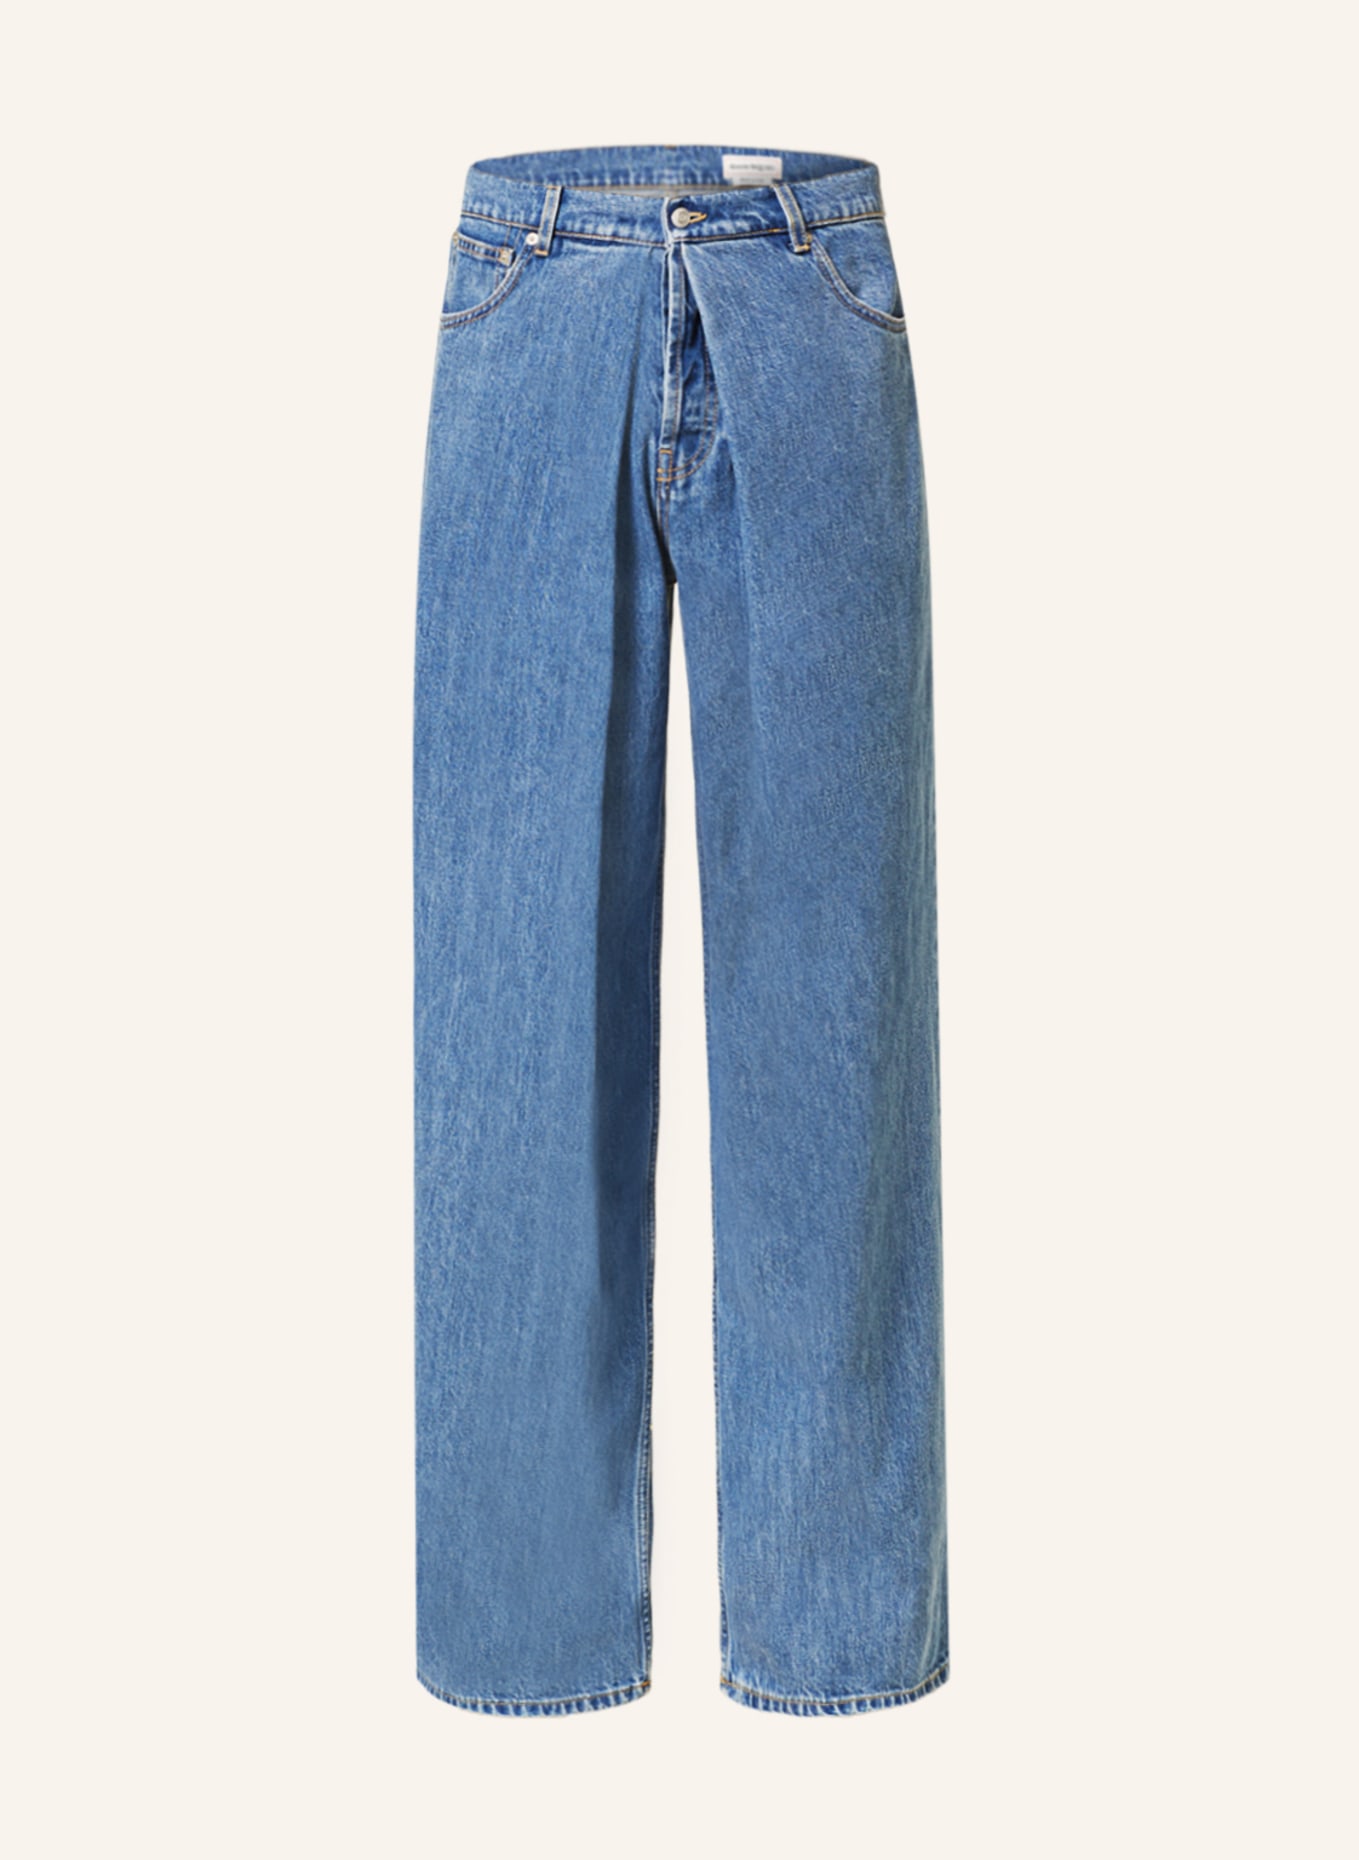 Alexander McQUEEN Jeans regular fit, Color: 4001 BLUE WASHED (Image 1)